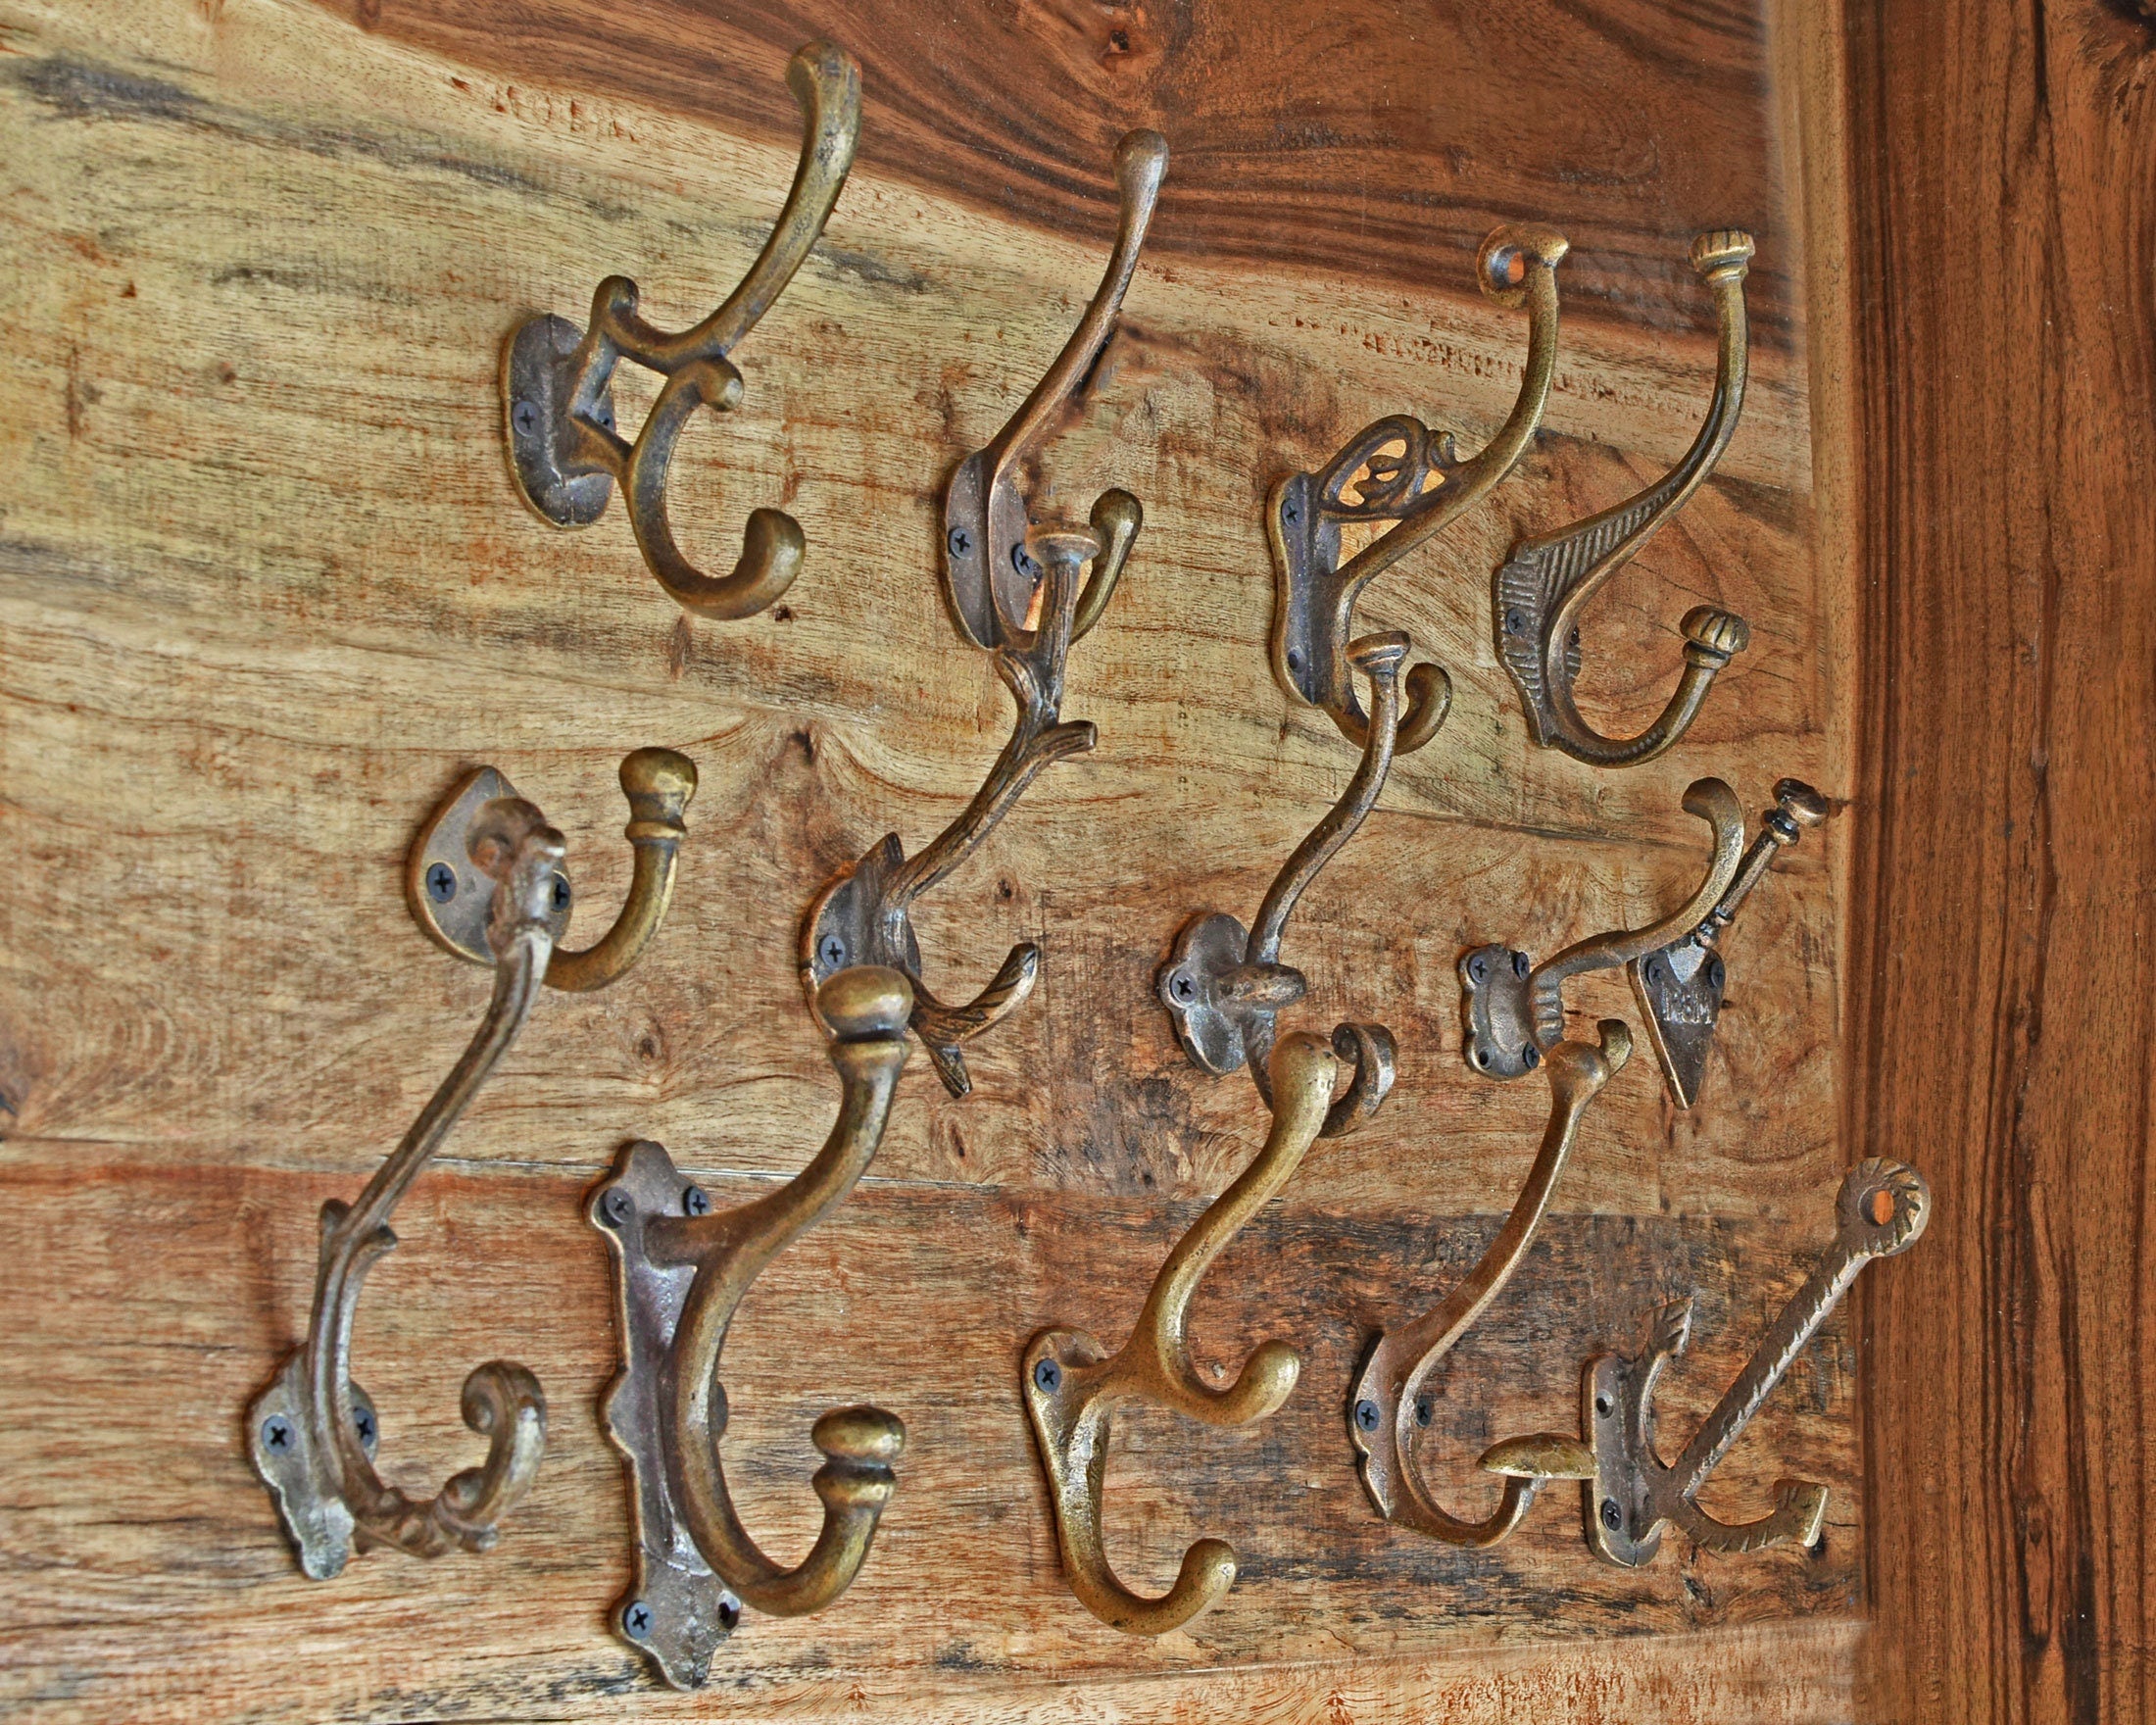 Brass Wall Hook, Key Hook for Wall, Decorative Hooks, Key Hook Camel, Coat  Hangers, Vintage Brass Wall Hook, Towel Hook Holder, 8 Hooks 